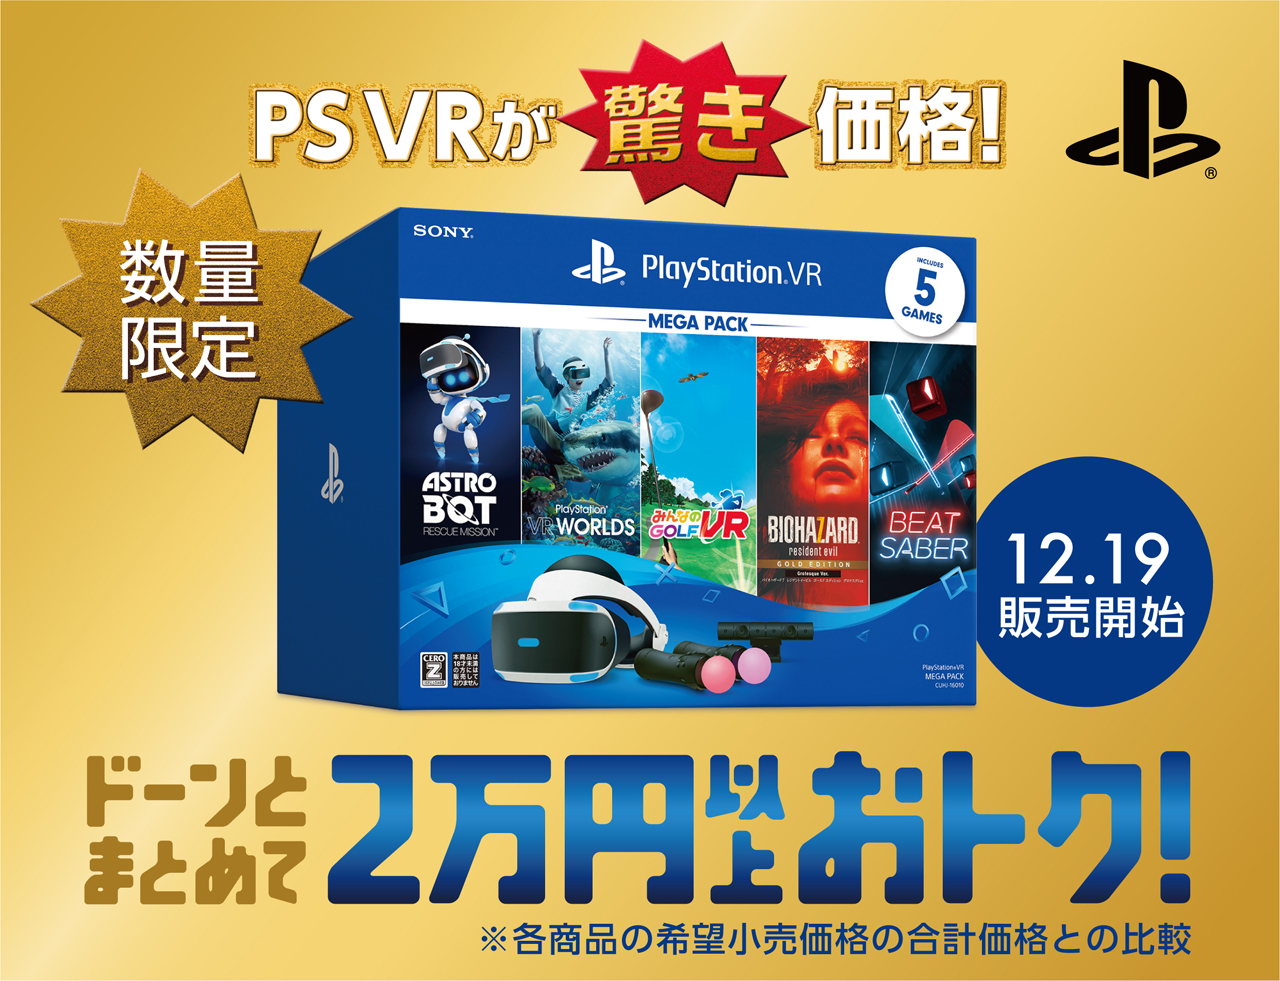 画像集/PS4とPS4 Proが1万円引きとなるキャンペーンが予告どおり本日スタート。PS4スタンダードモデルは税抜“イチキュッキュッパ”から